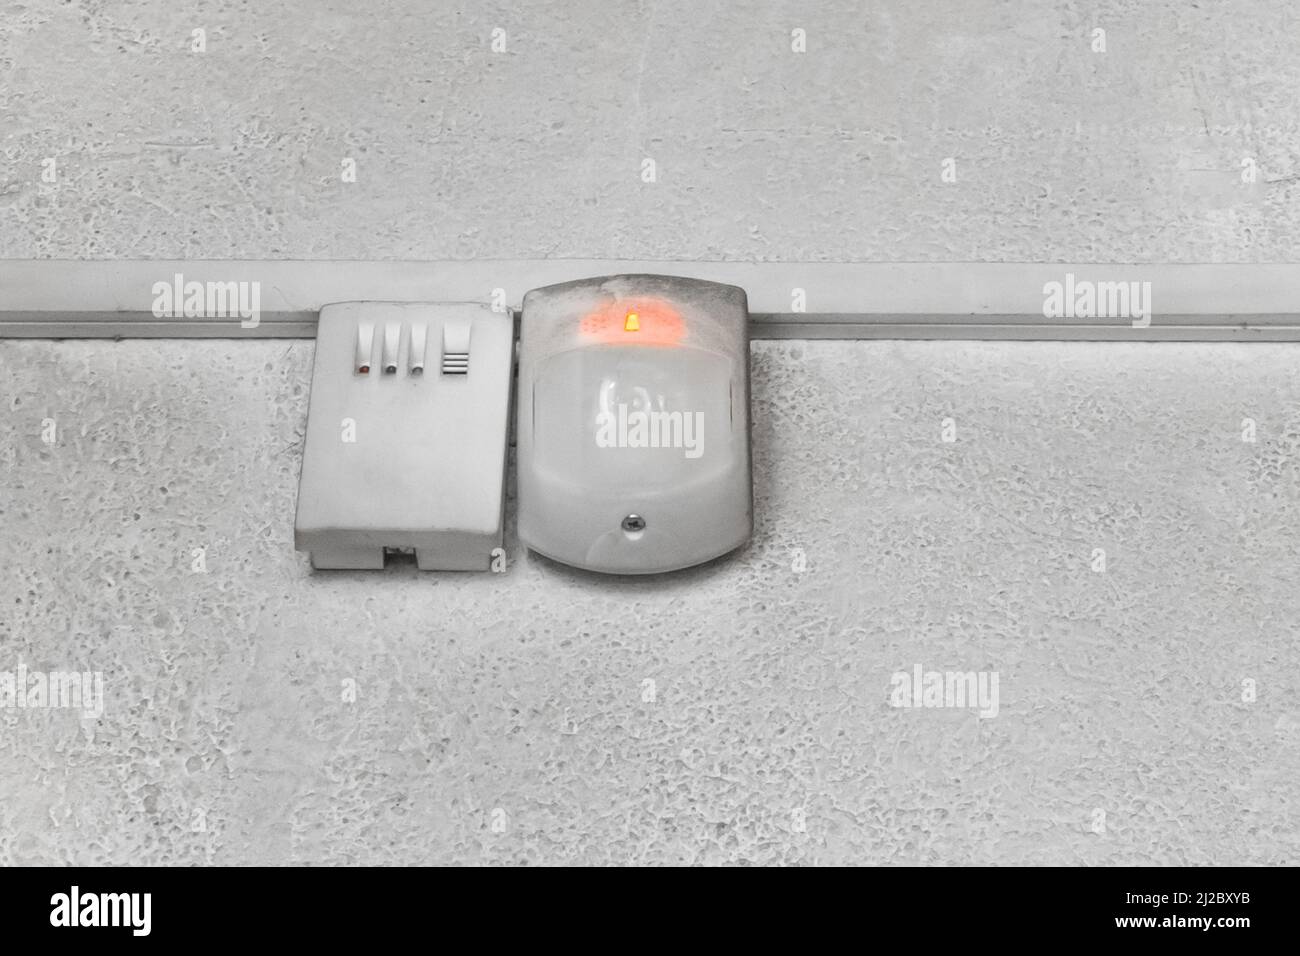 Système de sécurité anti-incendie anti-effraction contrôle de protection contre les alarmes équipement technologique moderne. Banque D'Images